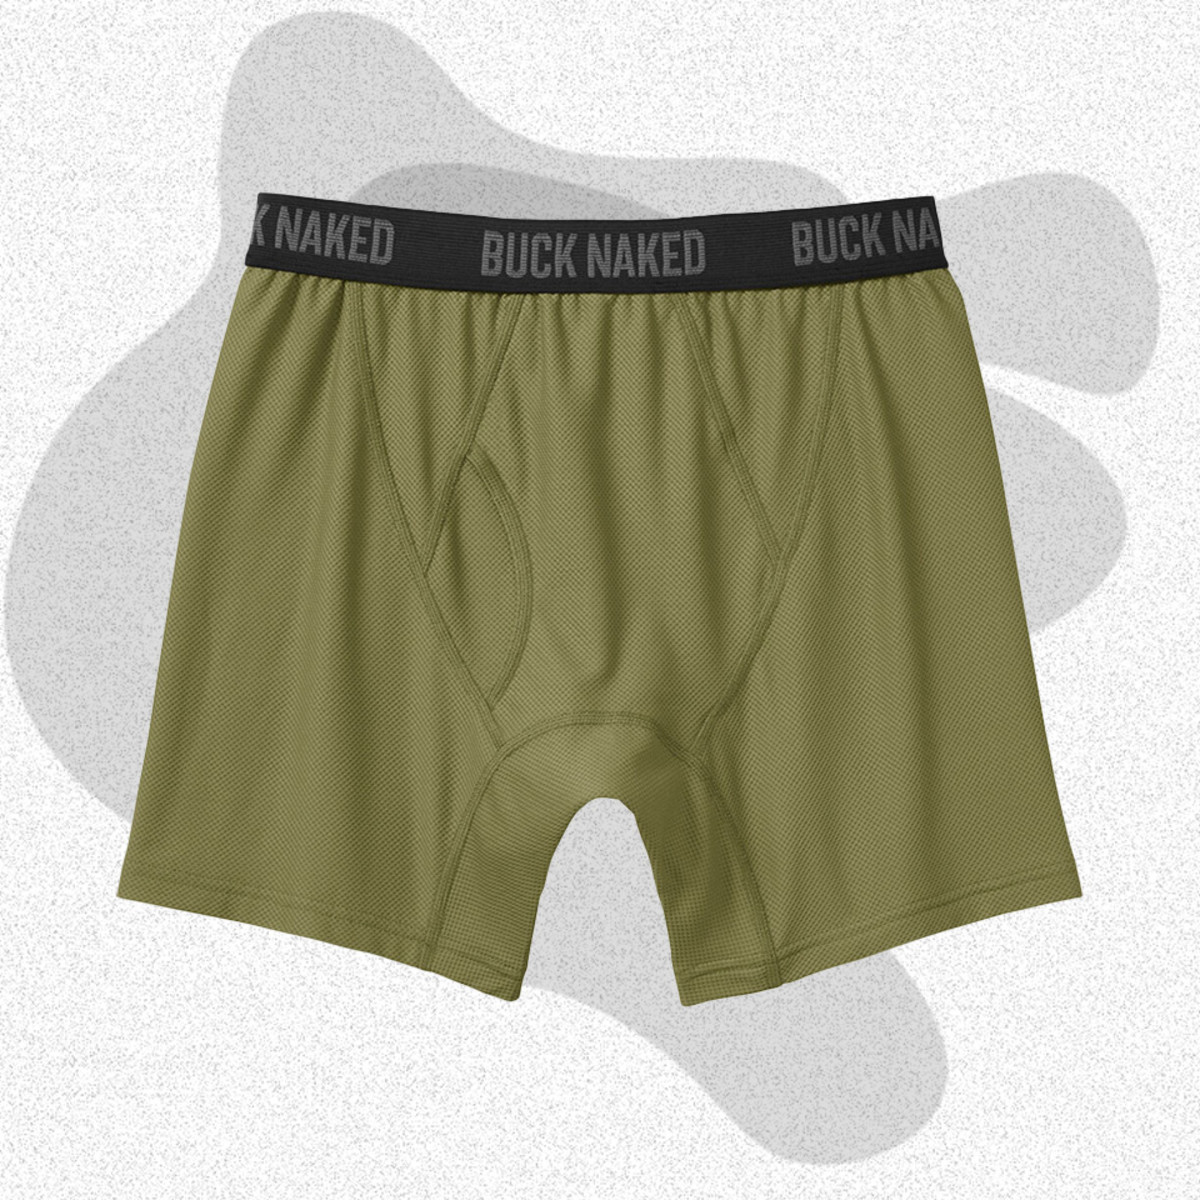 Best Men's Underwear for Sports and Active Lifestyles - ABC Underwear